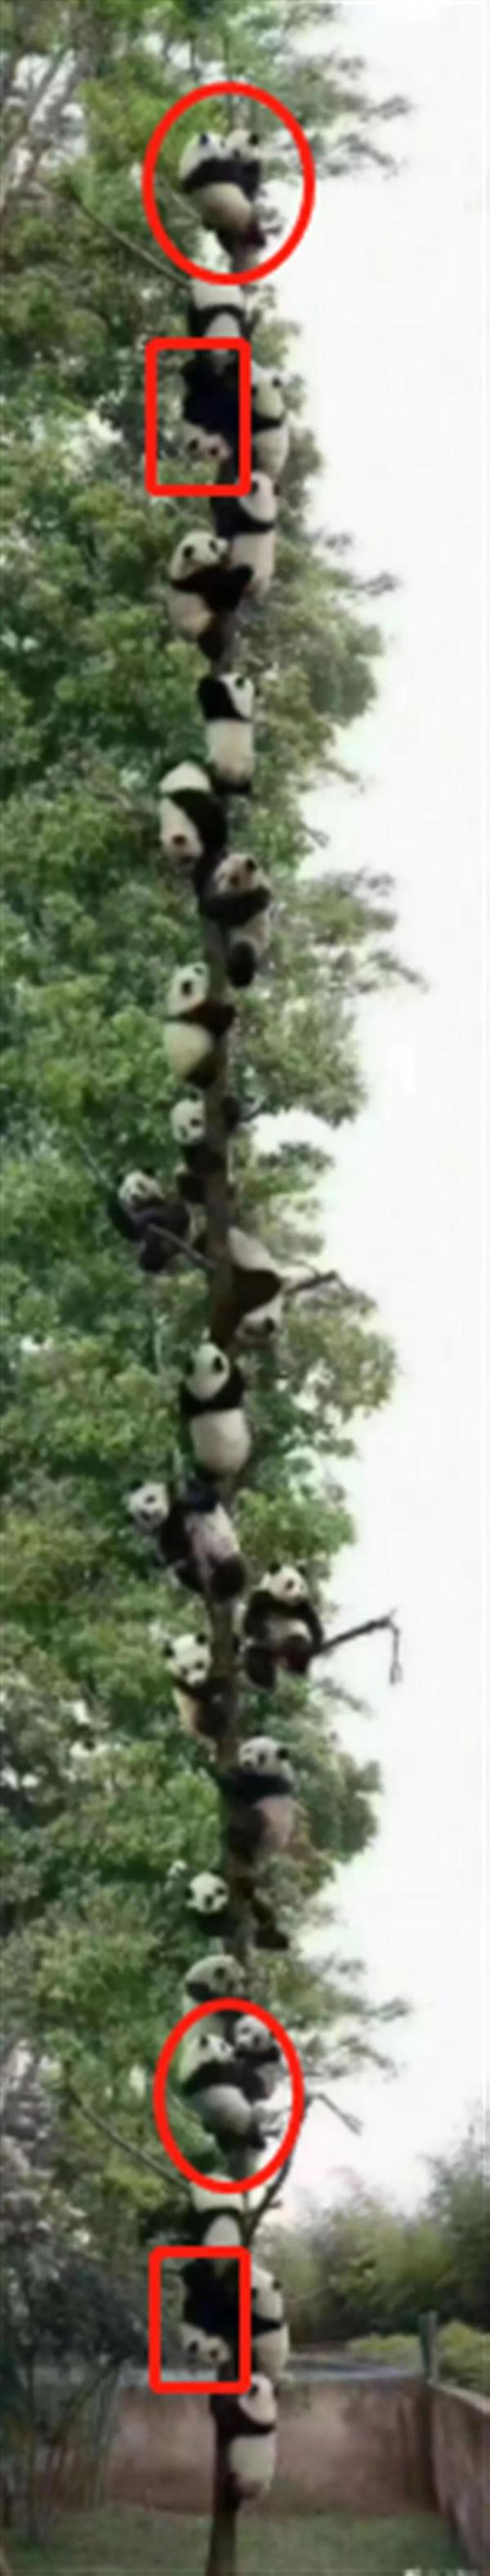 27只大熊猫爬同一棵树躲避地震？画面惊奇，但结果离谱了...